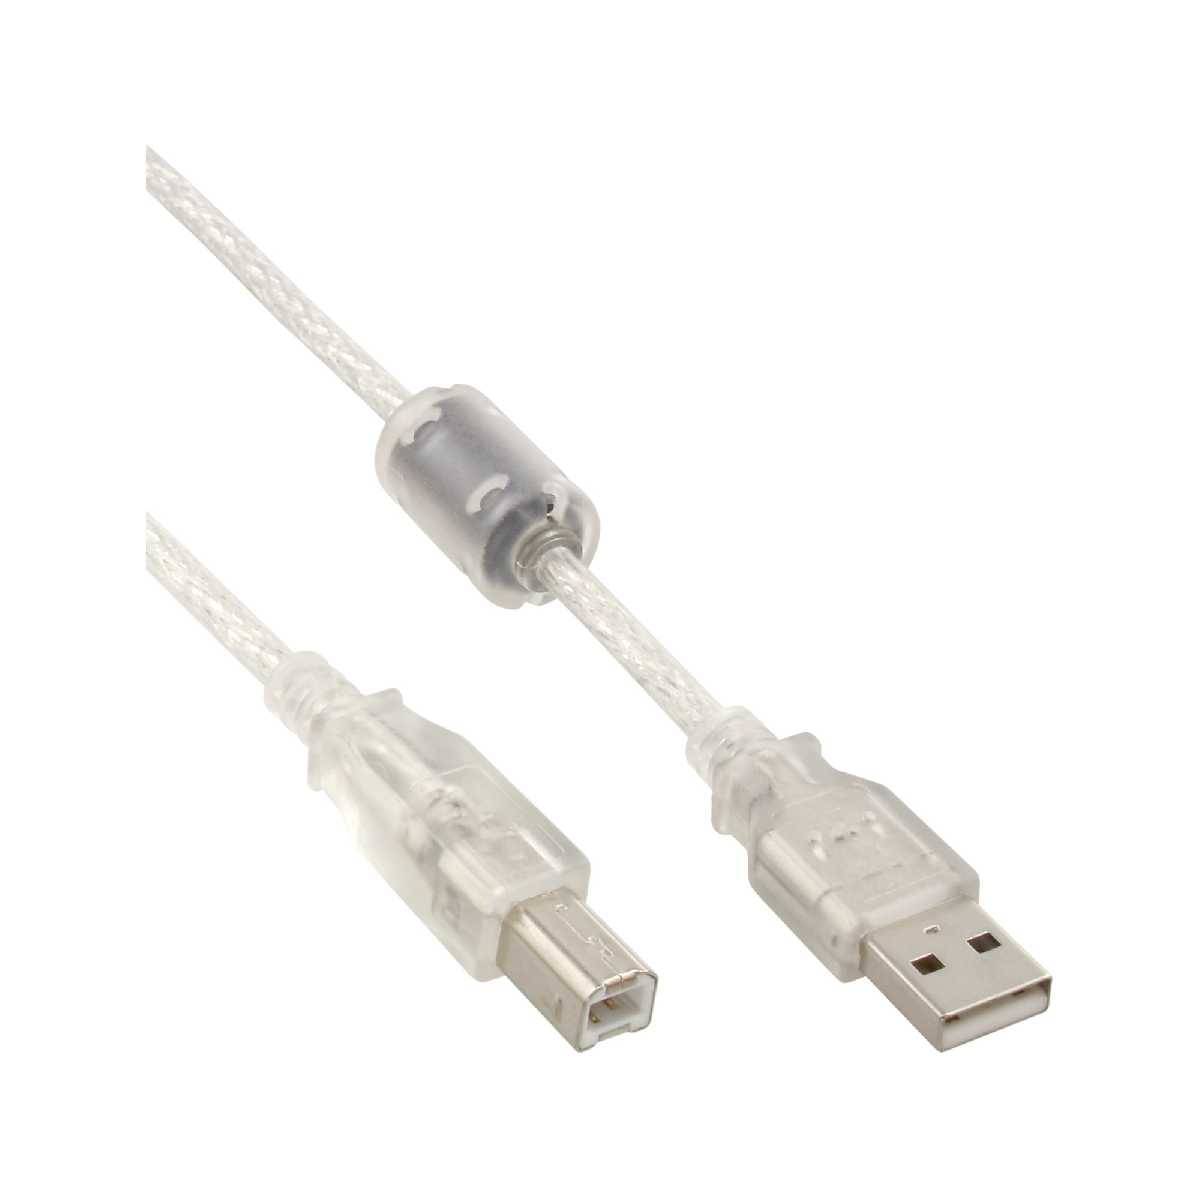 USB2 USB 2.0 Kabel A an B transparent mit Ferritkern 5m